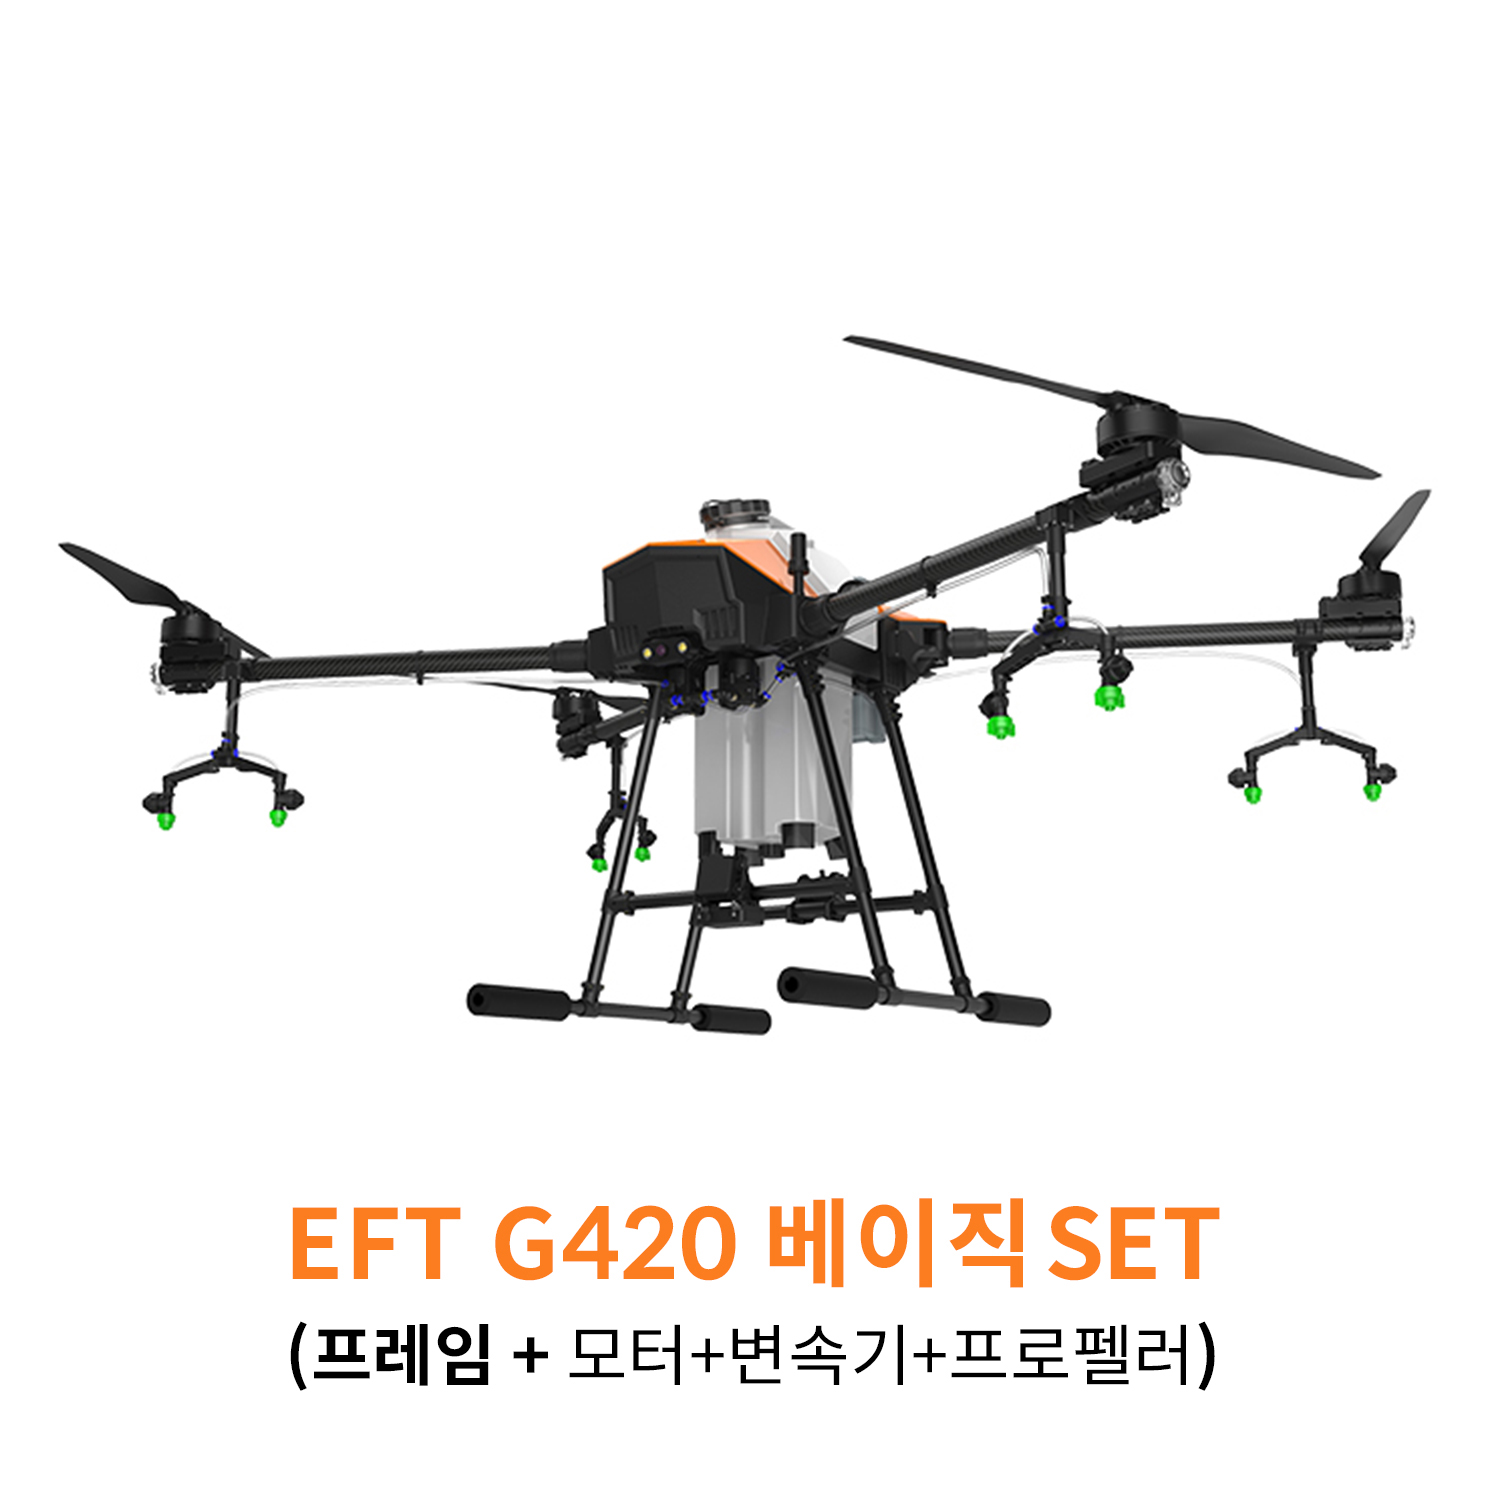 EFT G420 베이직 SET 농업 방제 드론하비윙 x9plus 파워시스템 탑재 헬셀